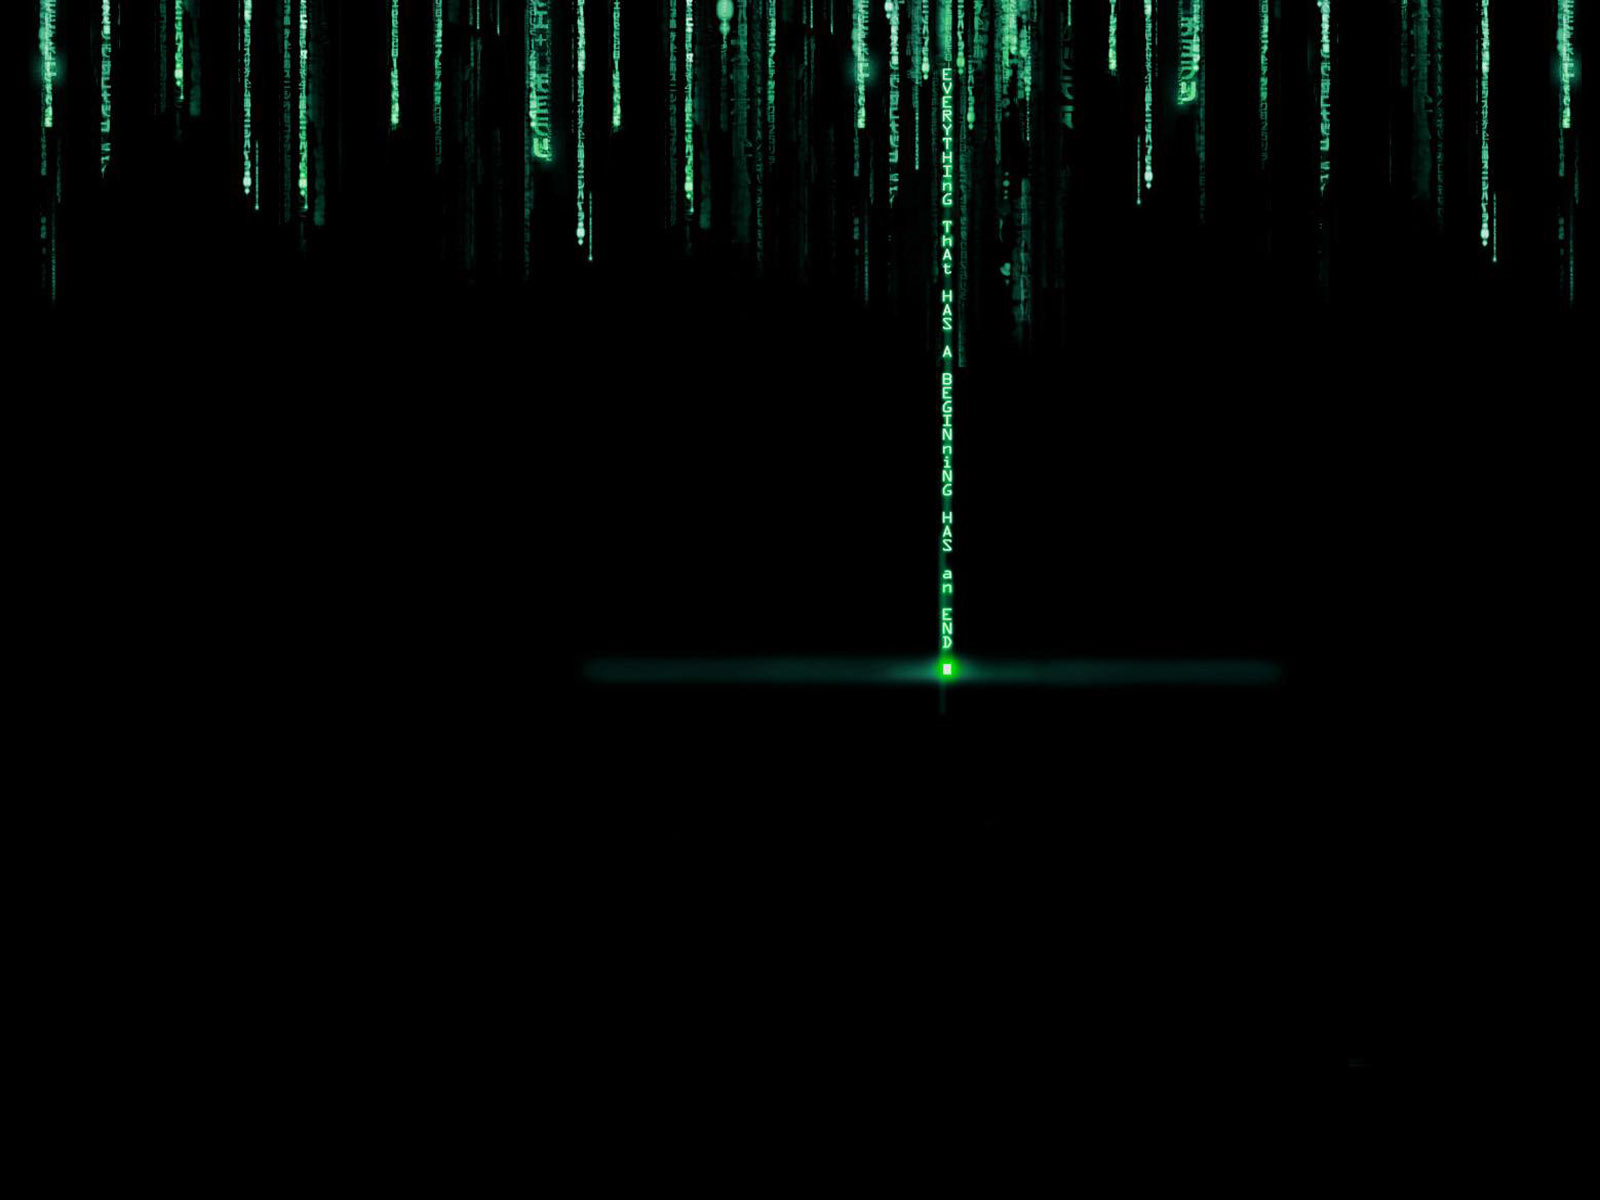 The Matrix Wallpaper HD